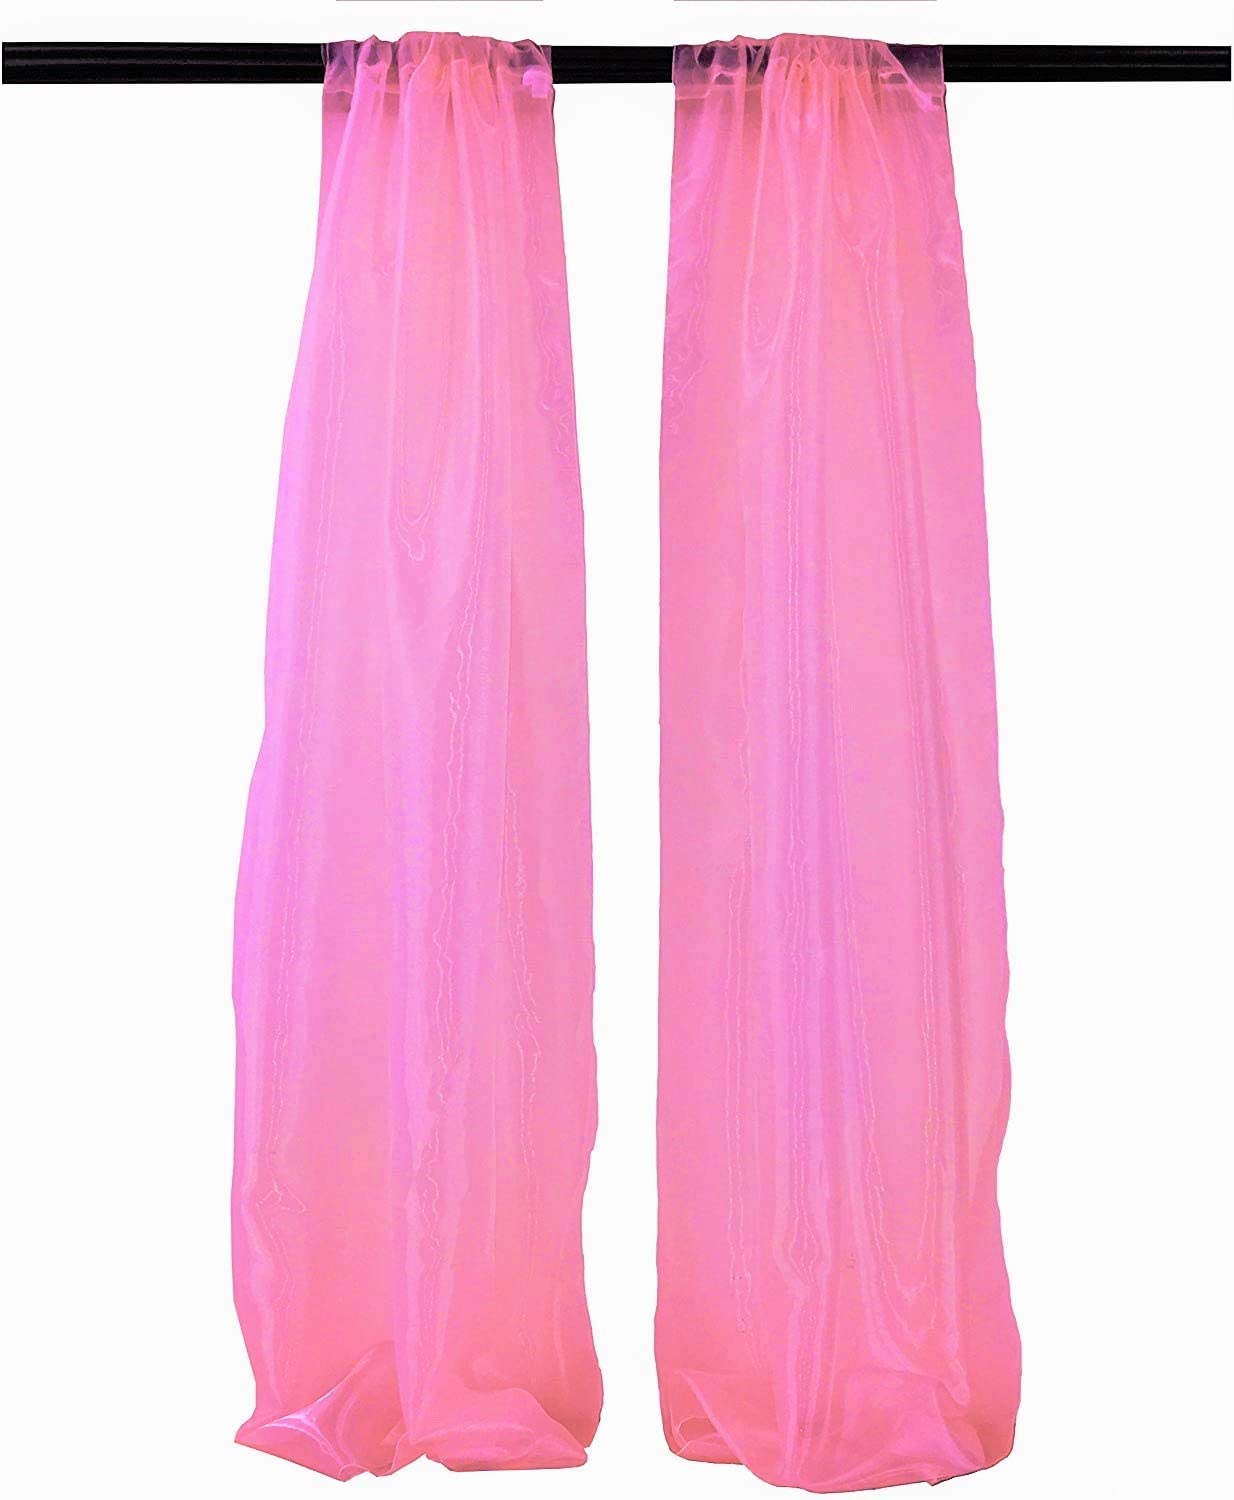 100% Polyester Sheer Mirror Organza Backdrop Drape, Curtain Panels, Room Divider, 1 Pair (Hot Pink,